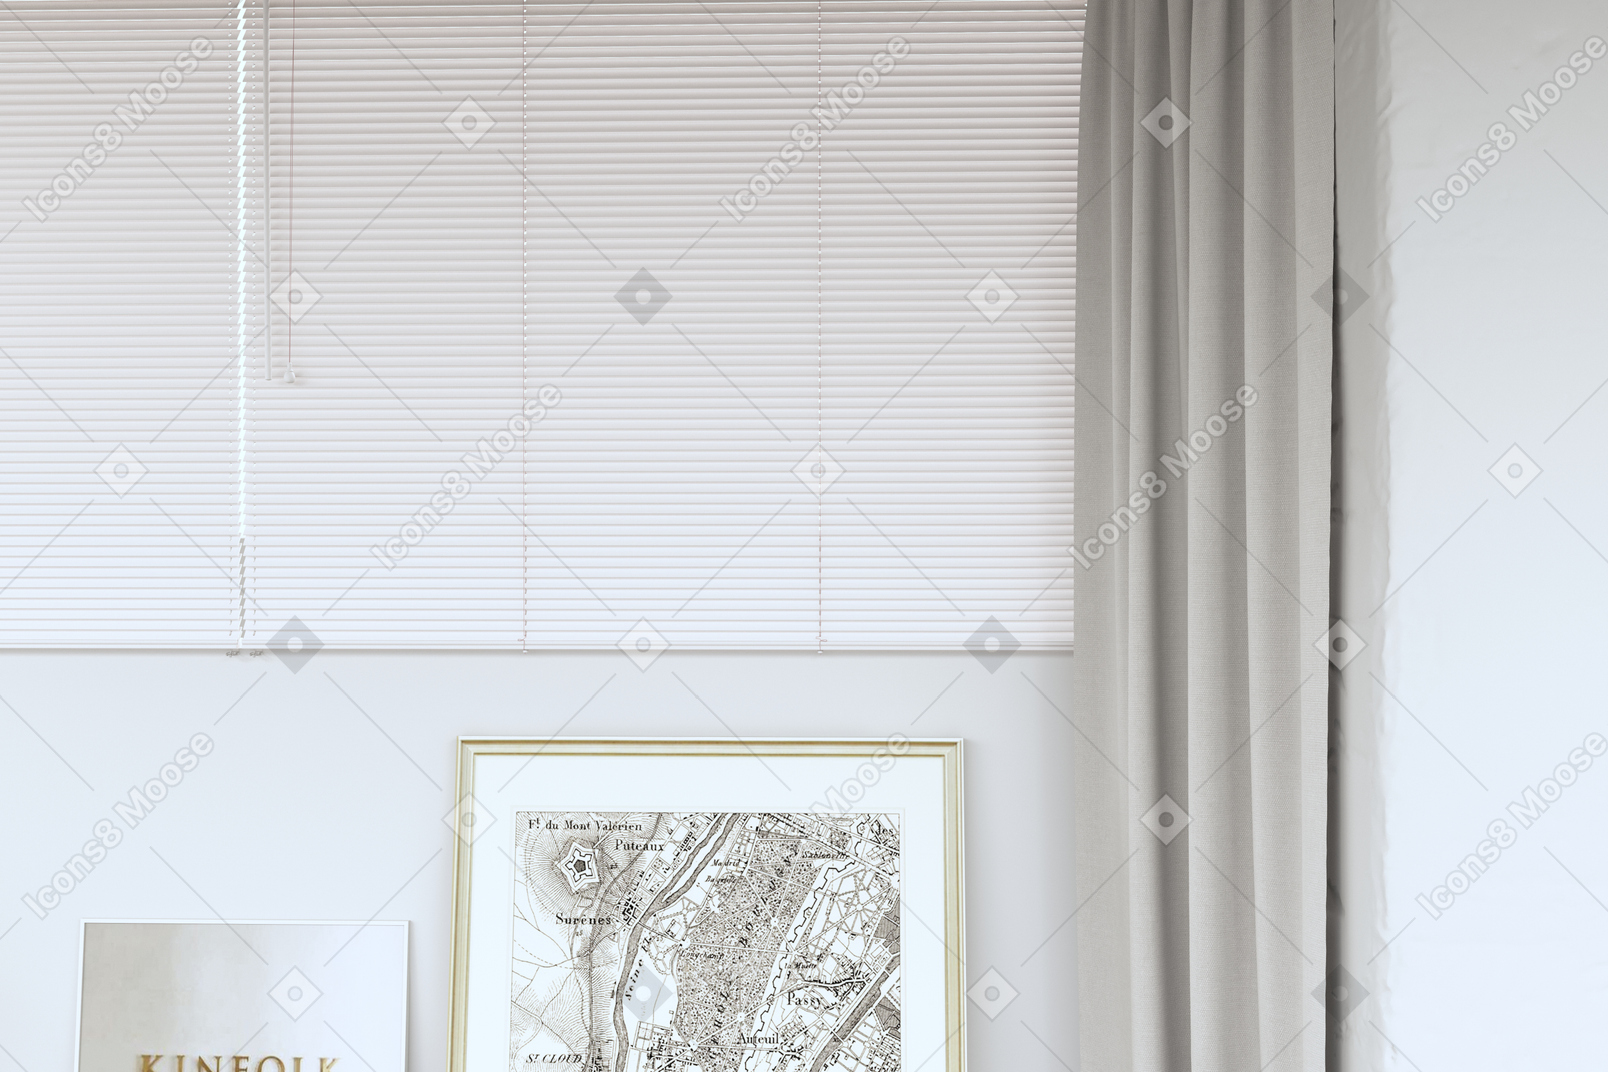 Interno con persiane chiuse, tende e poster in cornici